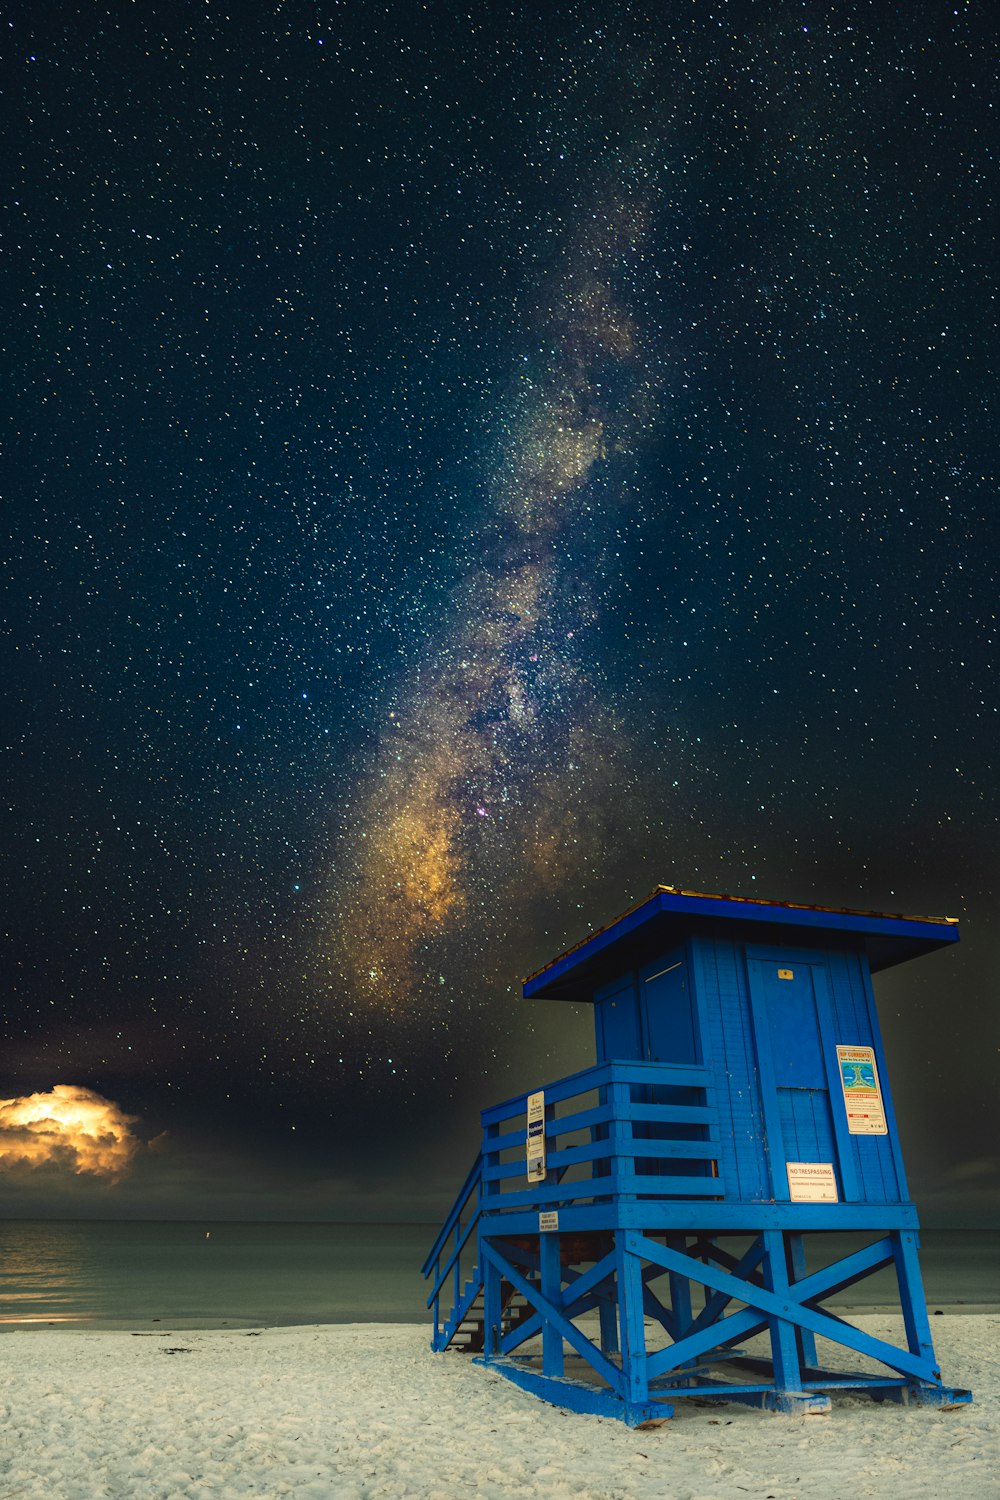 Una baracca blu su una spiaggia con stelle nel cielo